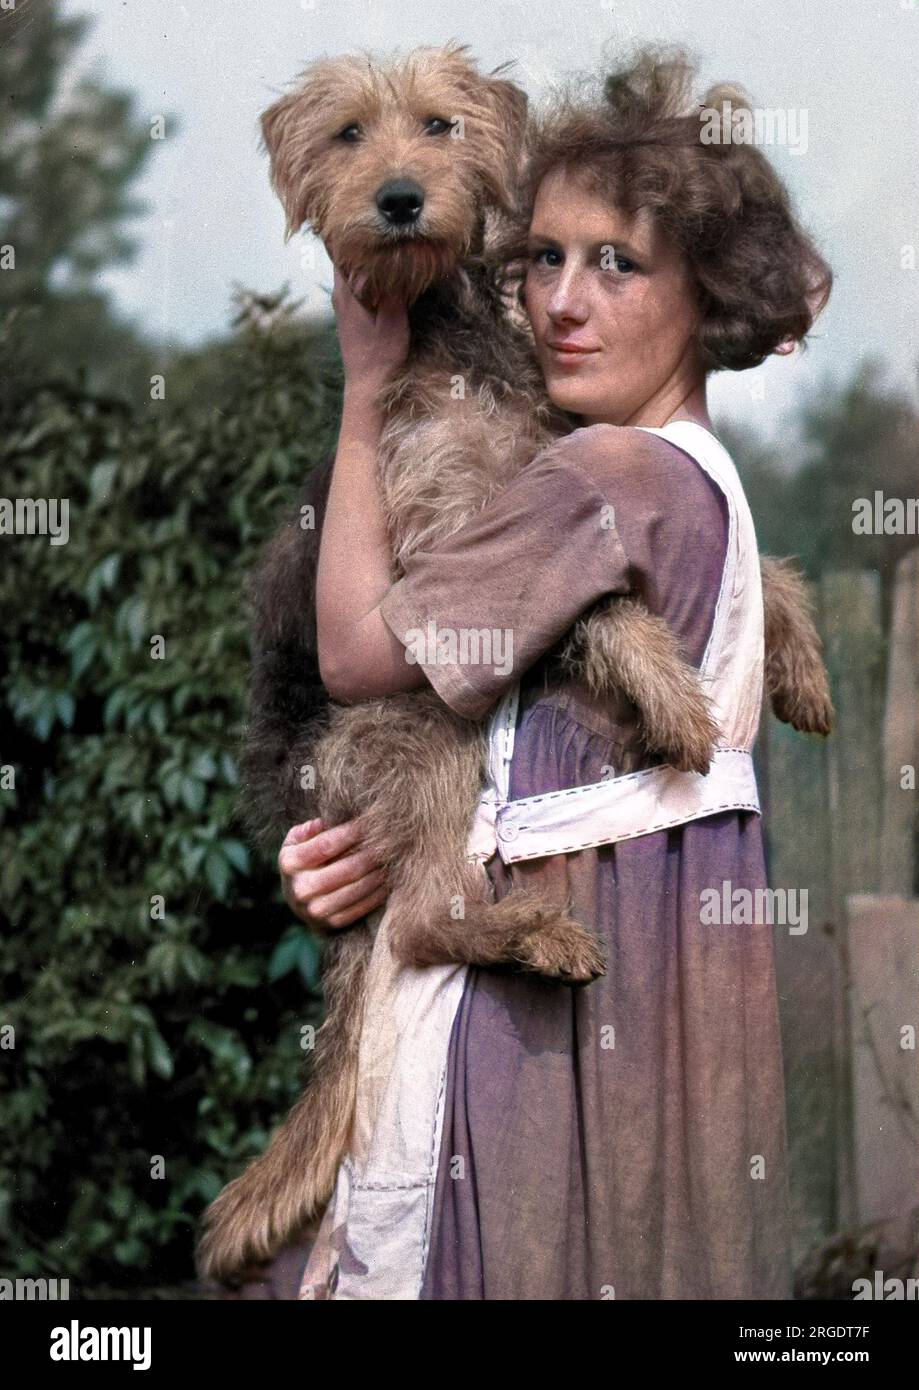 Eine schlanke junge Frau, die eine Schürze trägt und einen Hund in einem Garten hält. Stockfoto